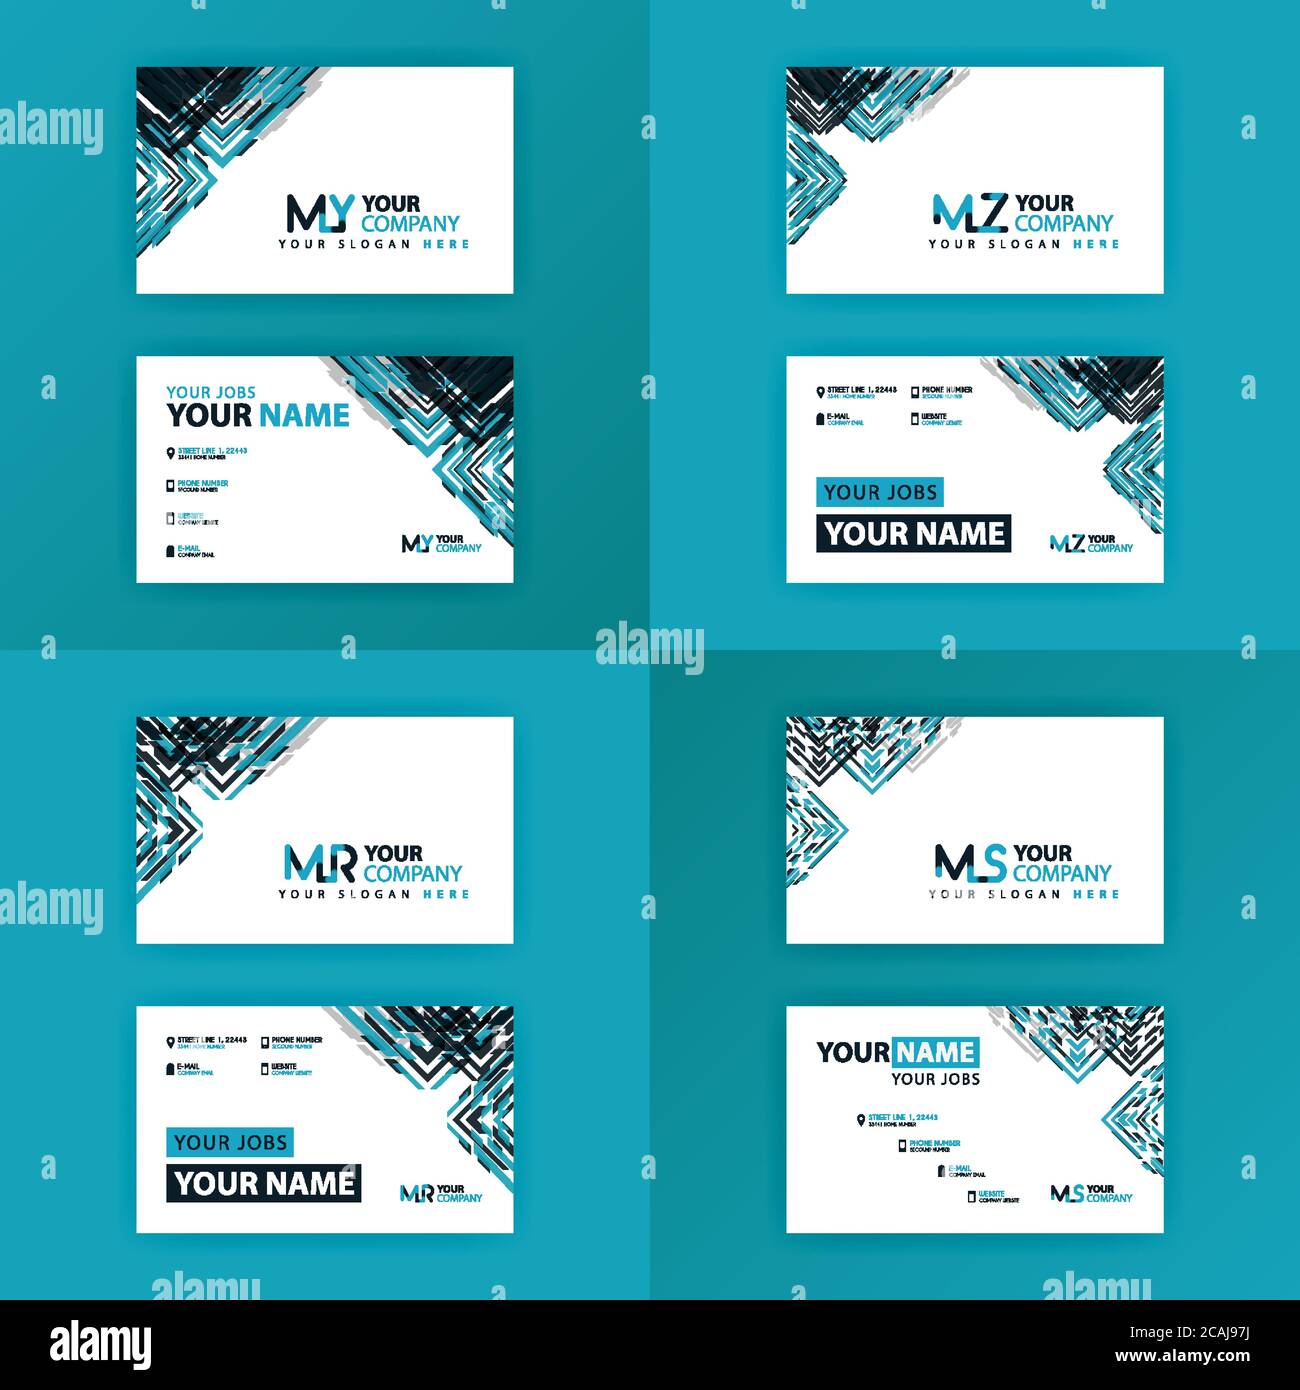 Visitenkarte buntes Alphabet Logo für Werbung, Marketing und Werbung für Unternehmen, Unternehmen, Genossenschaften und KMU. Geeignet für Print Me Stock Vektor